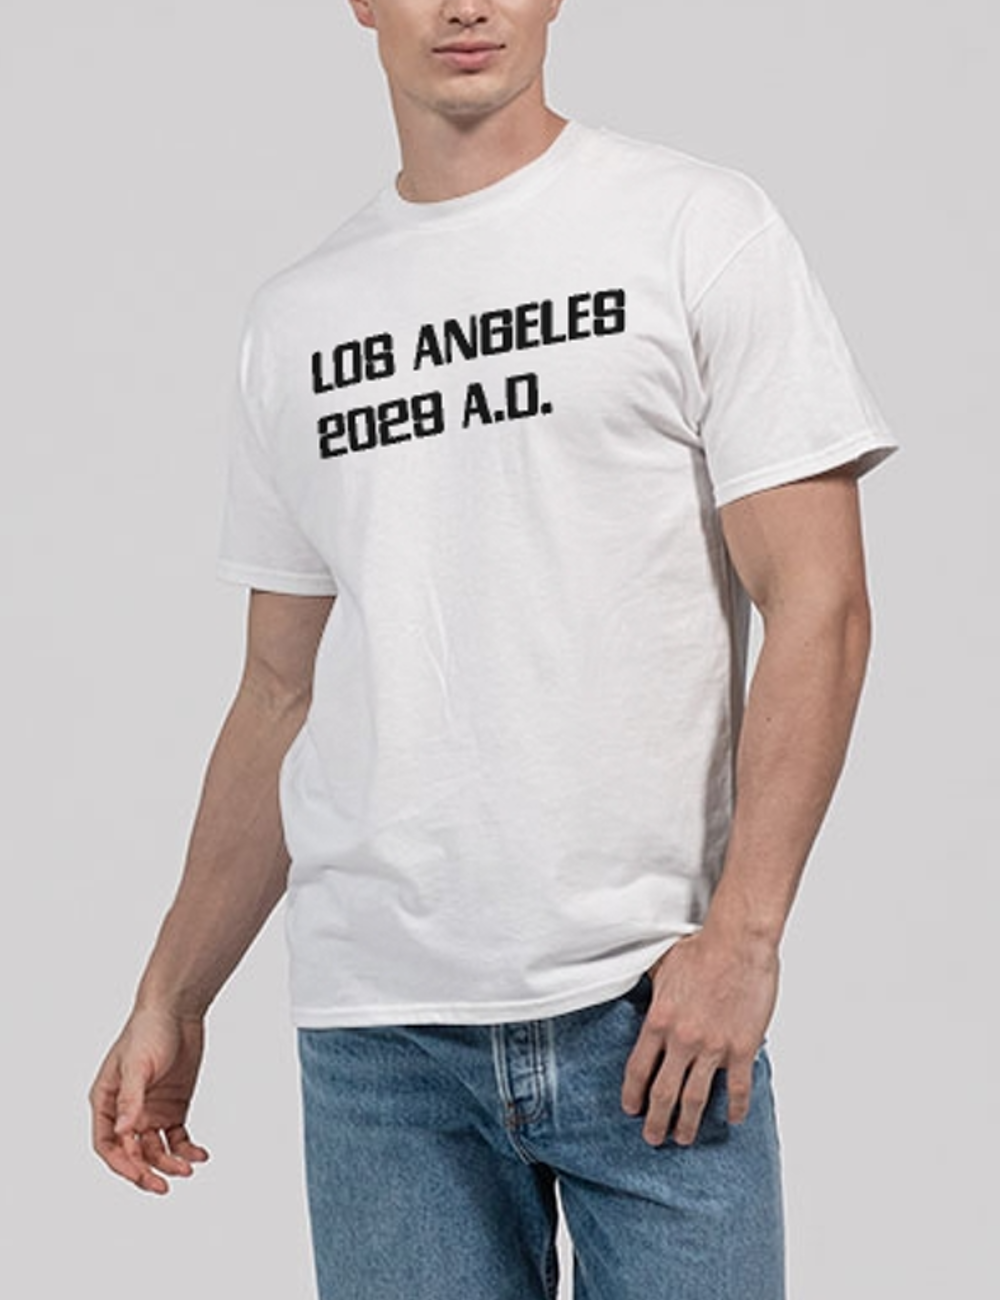 Los Angeles 2029 A.D. Men's Classic T-Shirt OniTakai